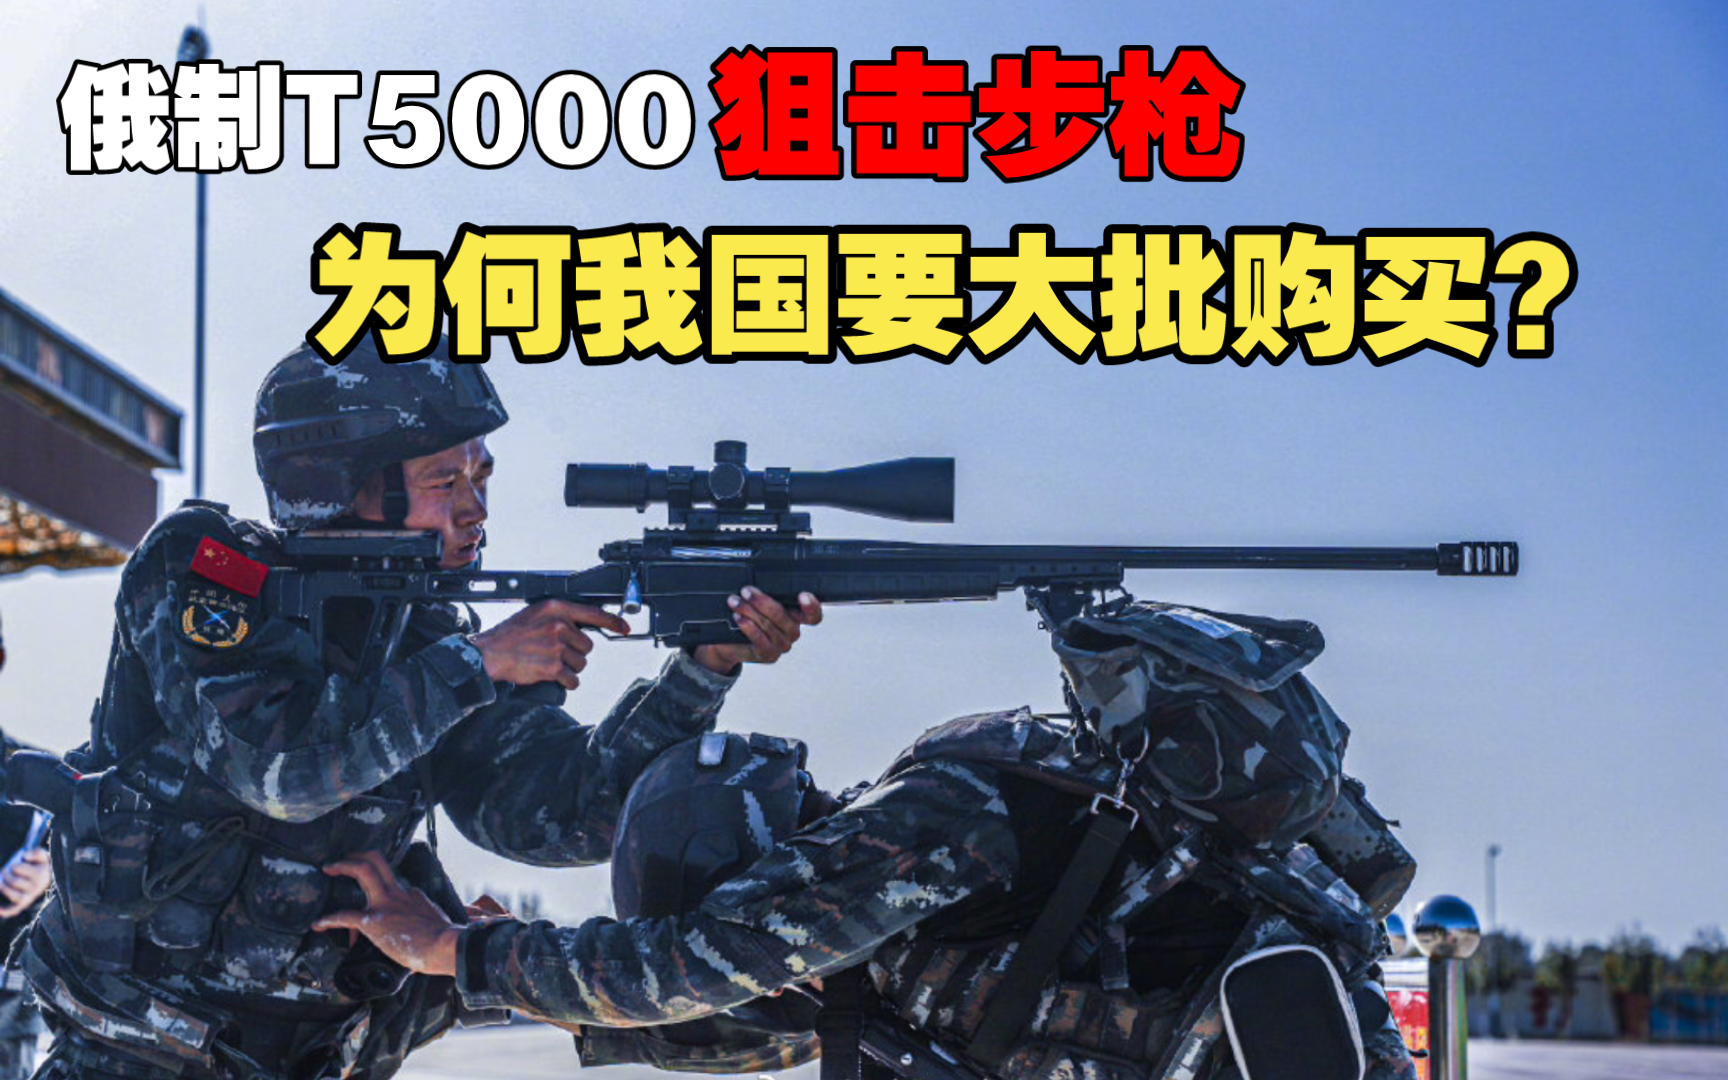 俄制T5000狙击步枪，究竟有多强？为何我国要大批购买？